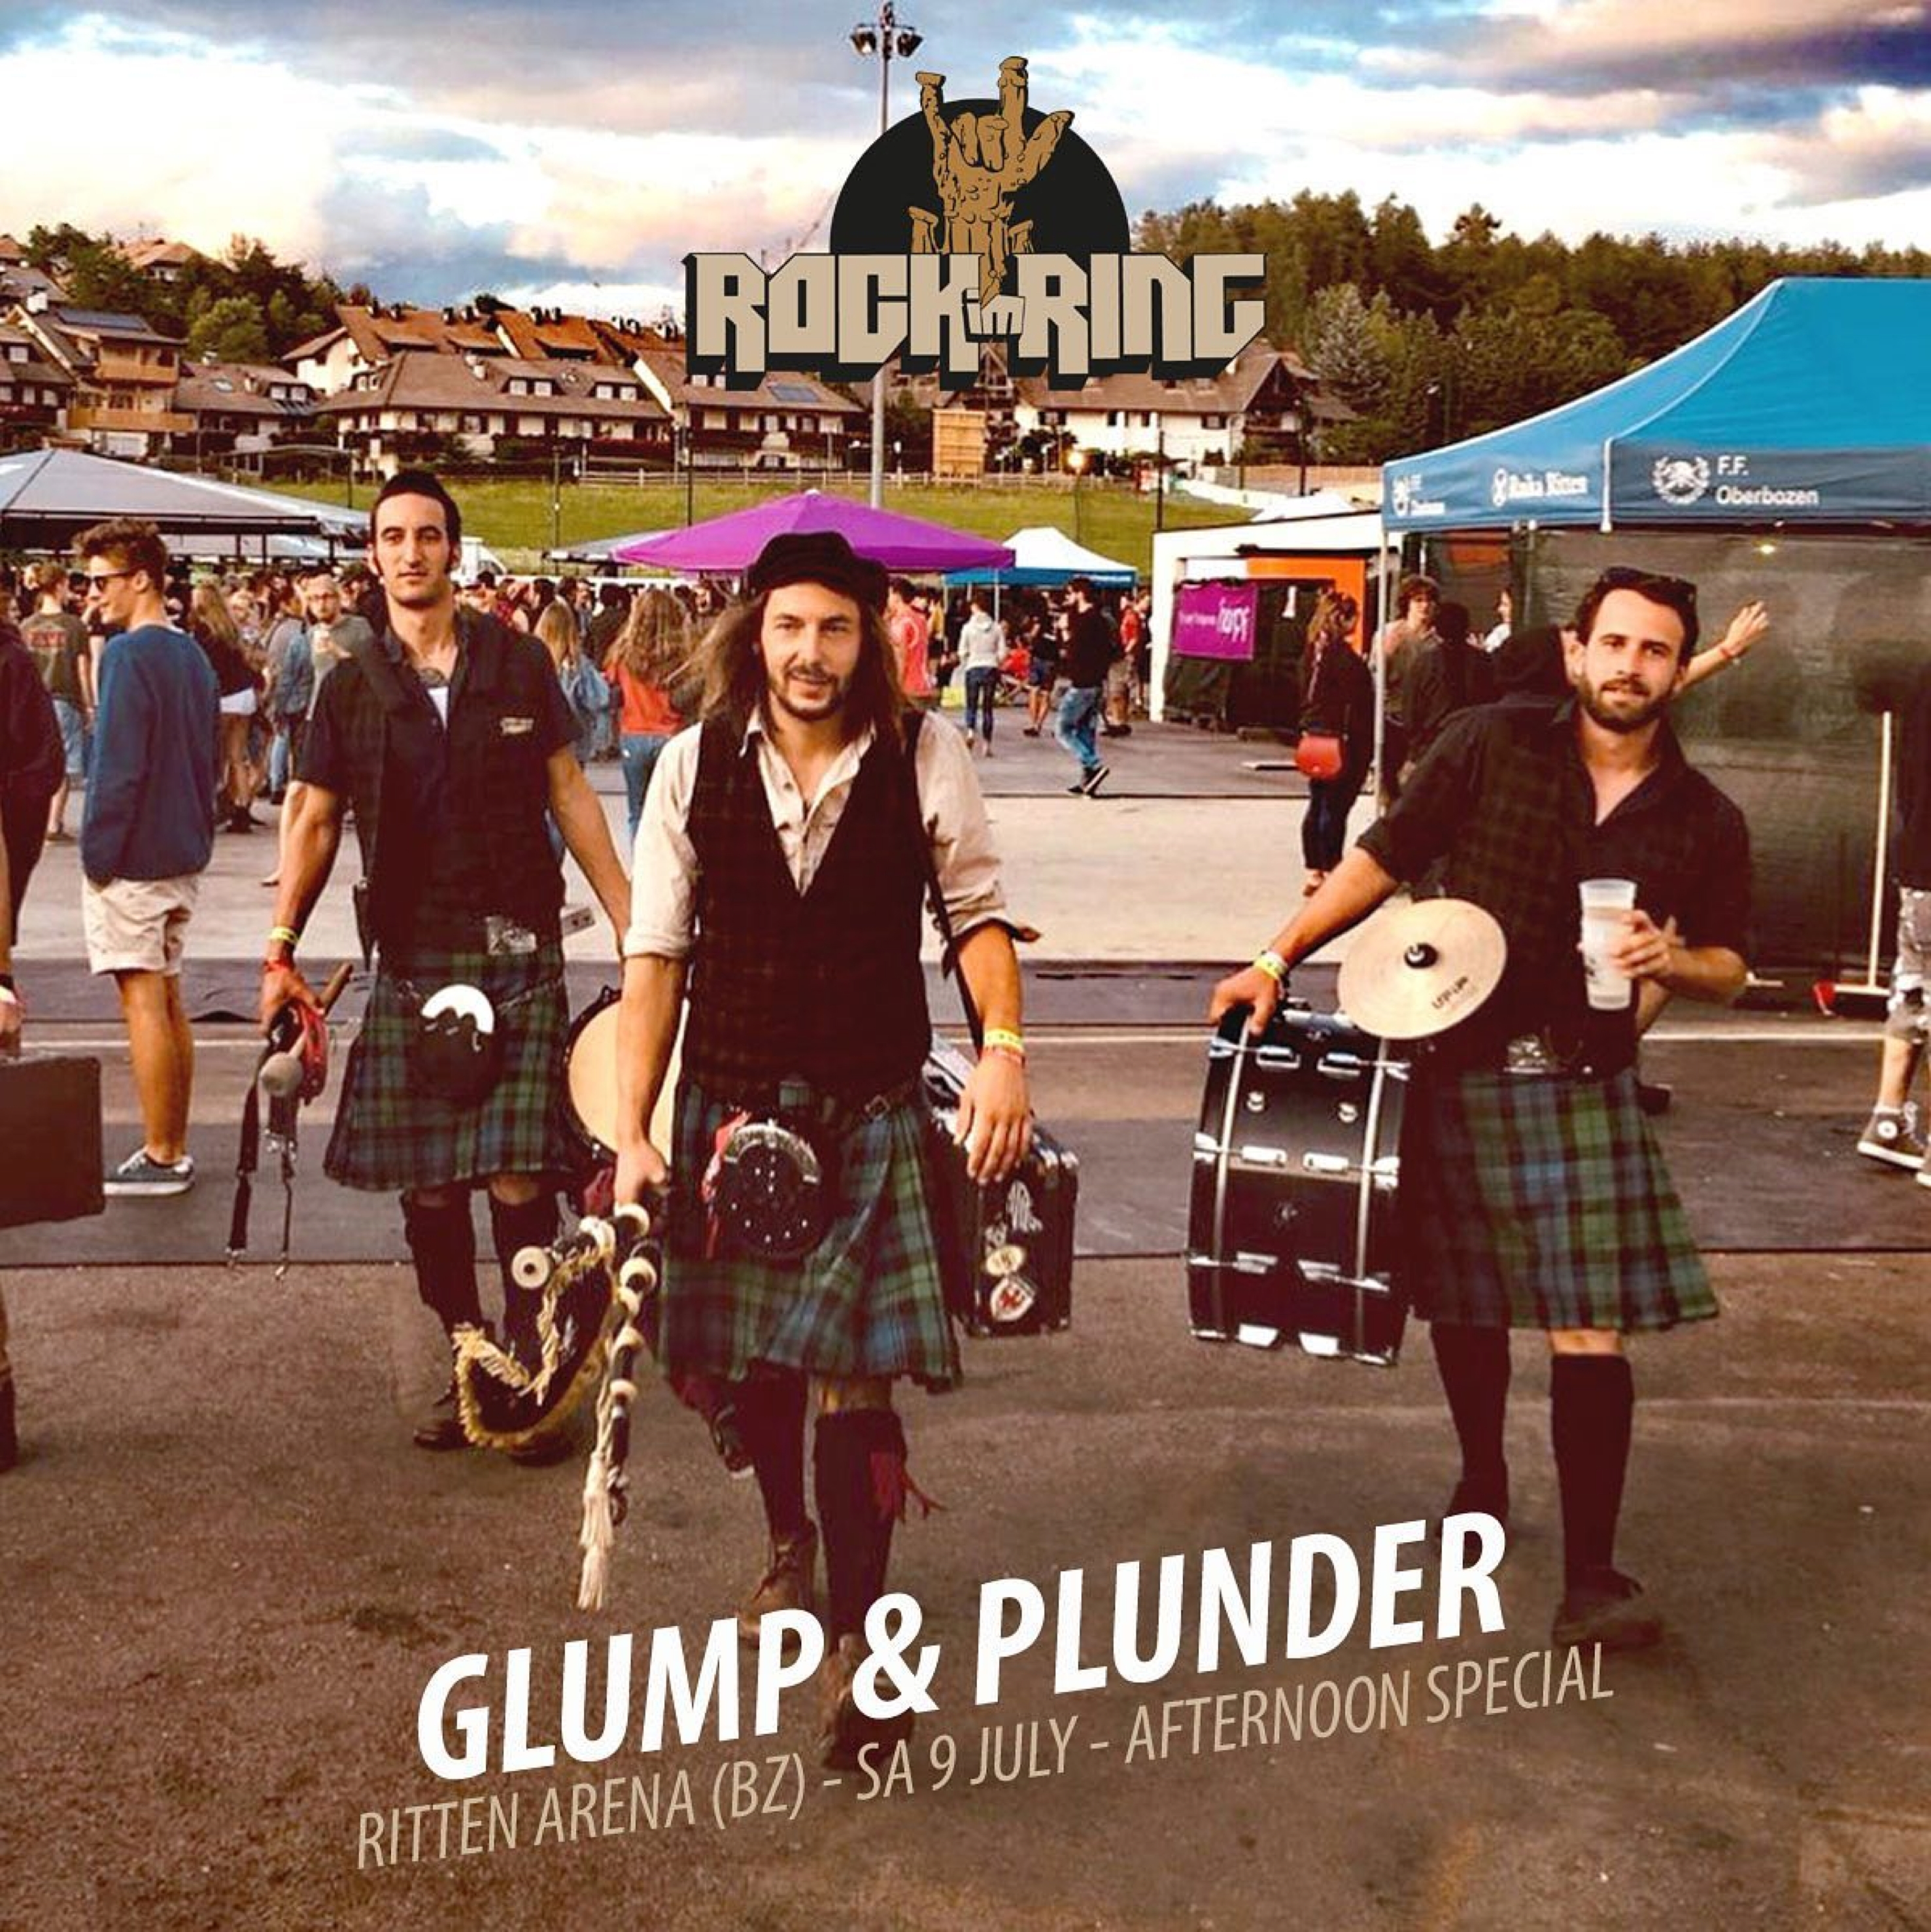 Spielen am Samstag eine „Special Afternoon Show”: Die Straßenmusiker Glump & Plunder kommen 2022 wieder zum Rock im Ring.